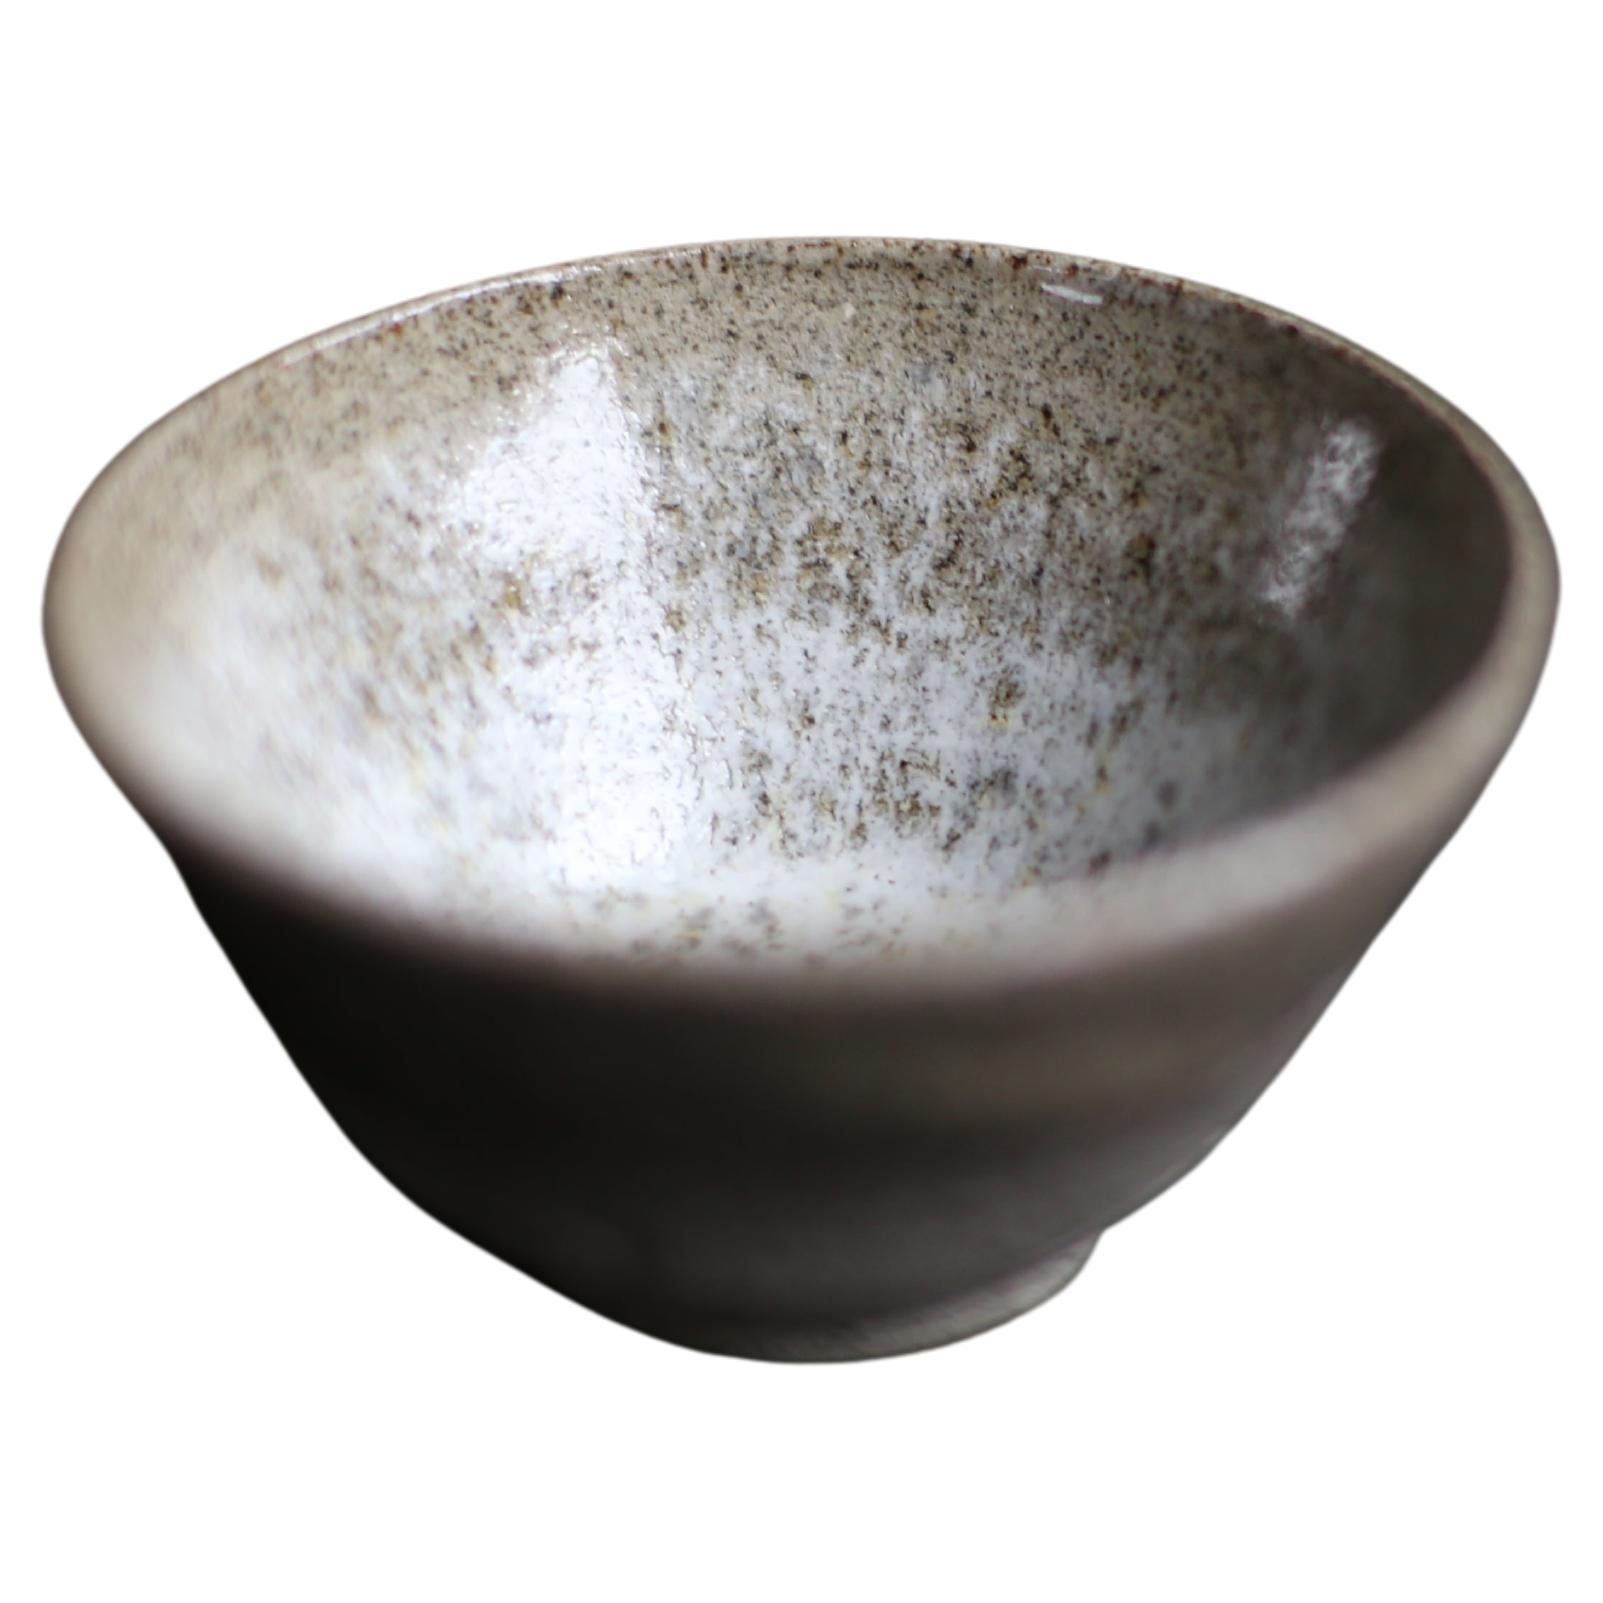 Cup aus grau gesprenkeltem Ton mit weiß gesprenkelter Glasur